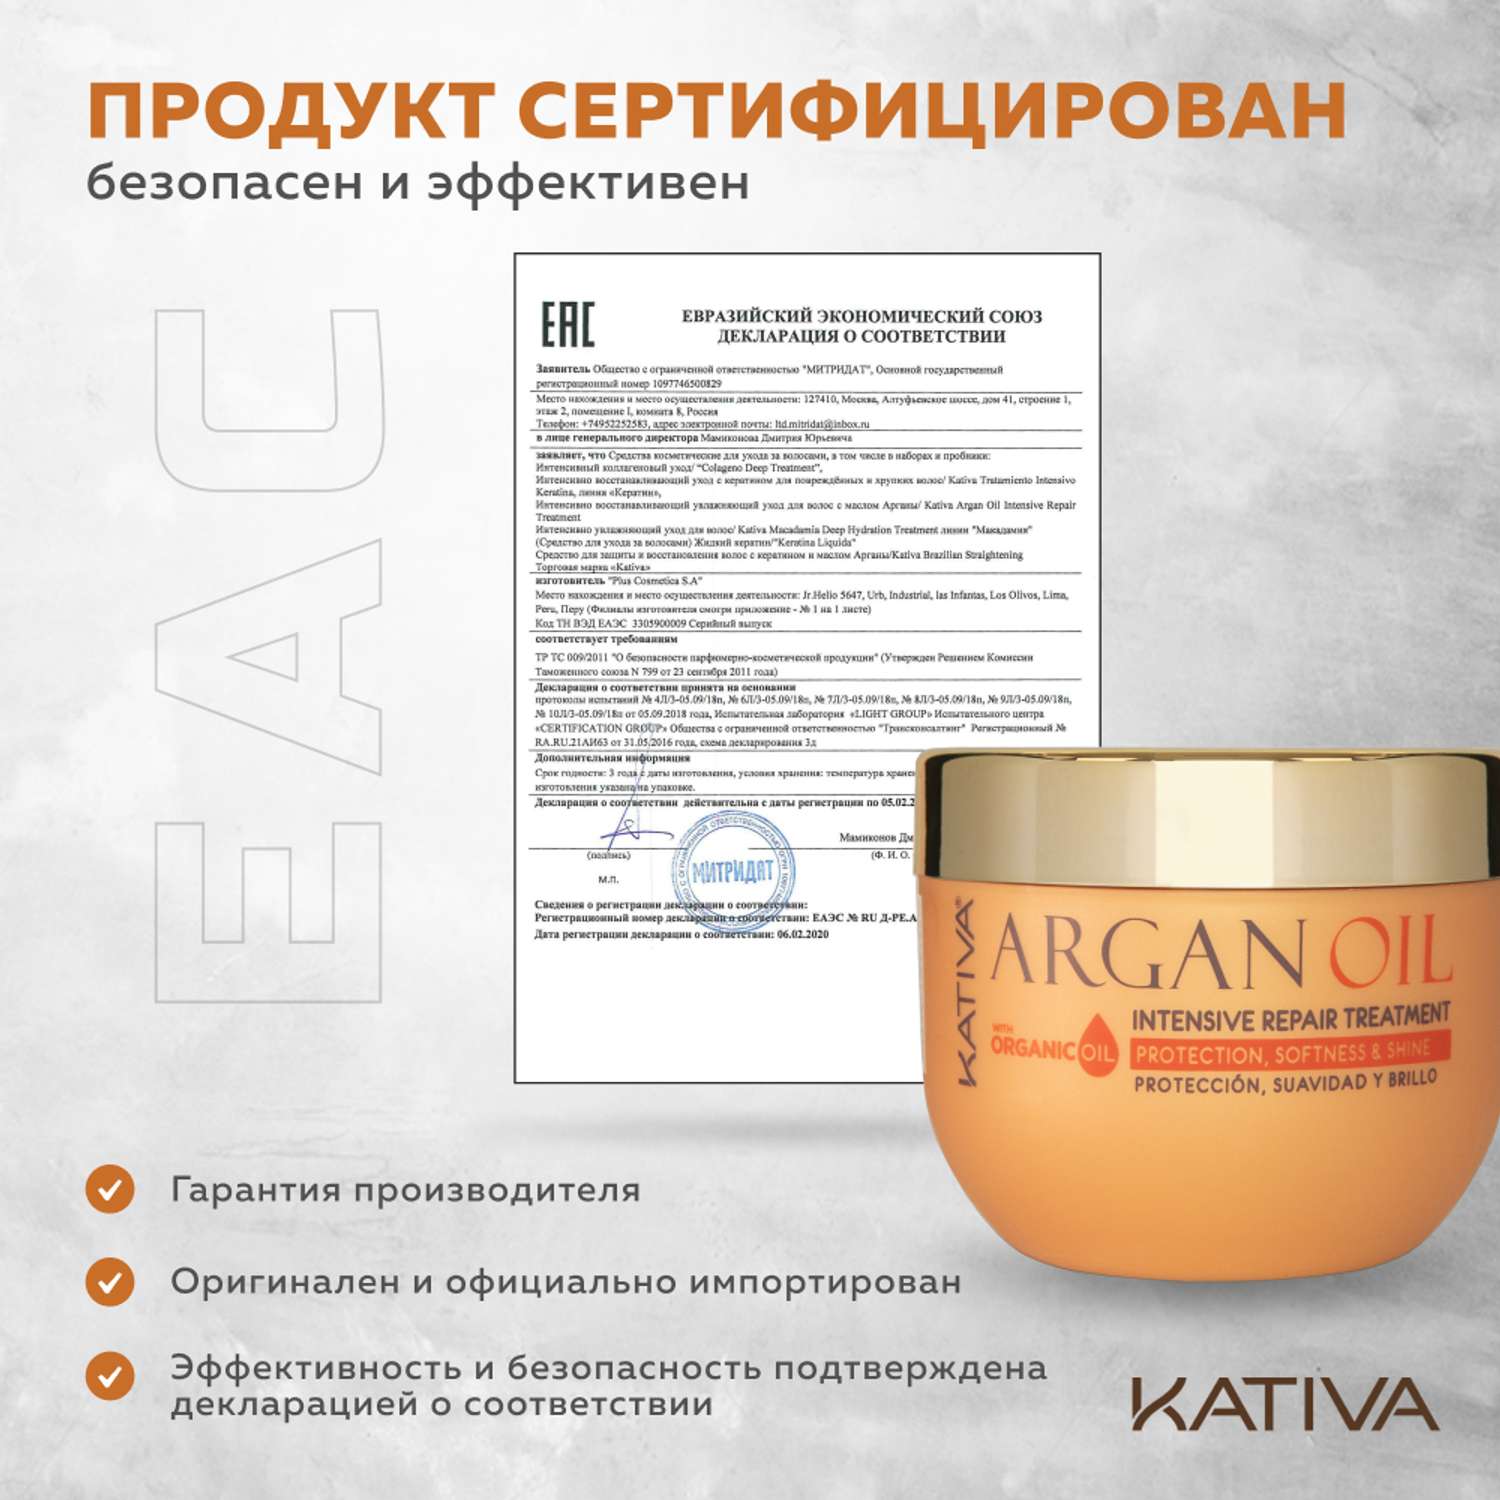 Увлажняющая маска Kativa для волос с маслом Арганы ARGAN OIL 250г - фото 7